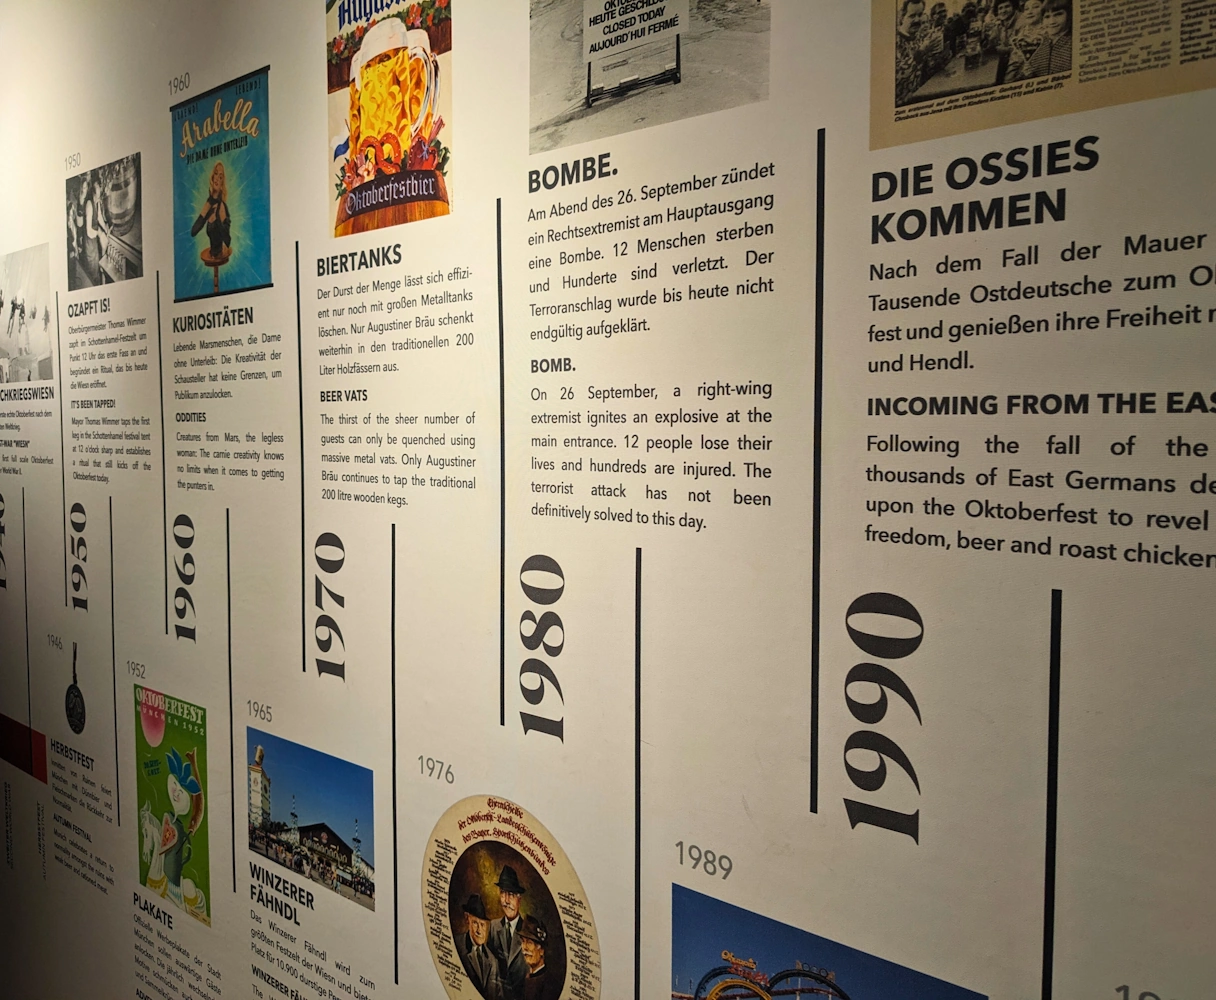 Bier & Oktoberfestmuseum ZeitstraBeer & Oktoberfest Museum Timeline of the most important events in the history of Munich & the Oktoberfesthl der wichtigsten Ereignisse in der Geschichte von München & dem Oktoberfest